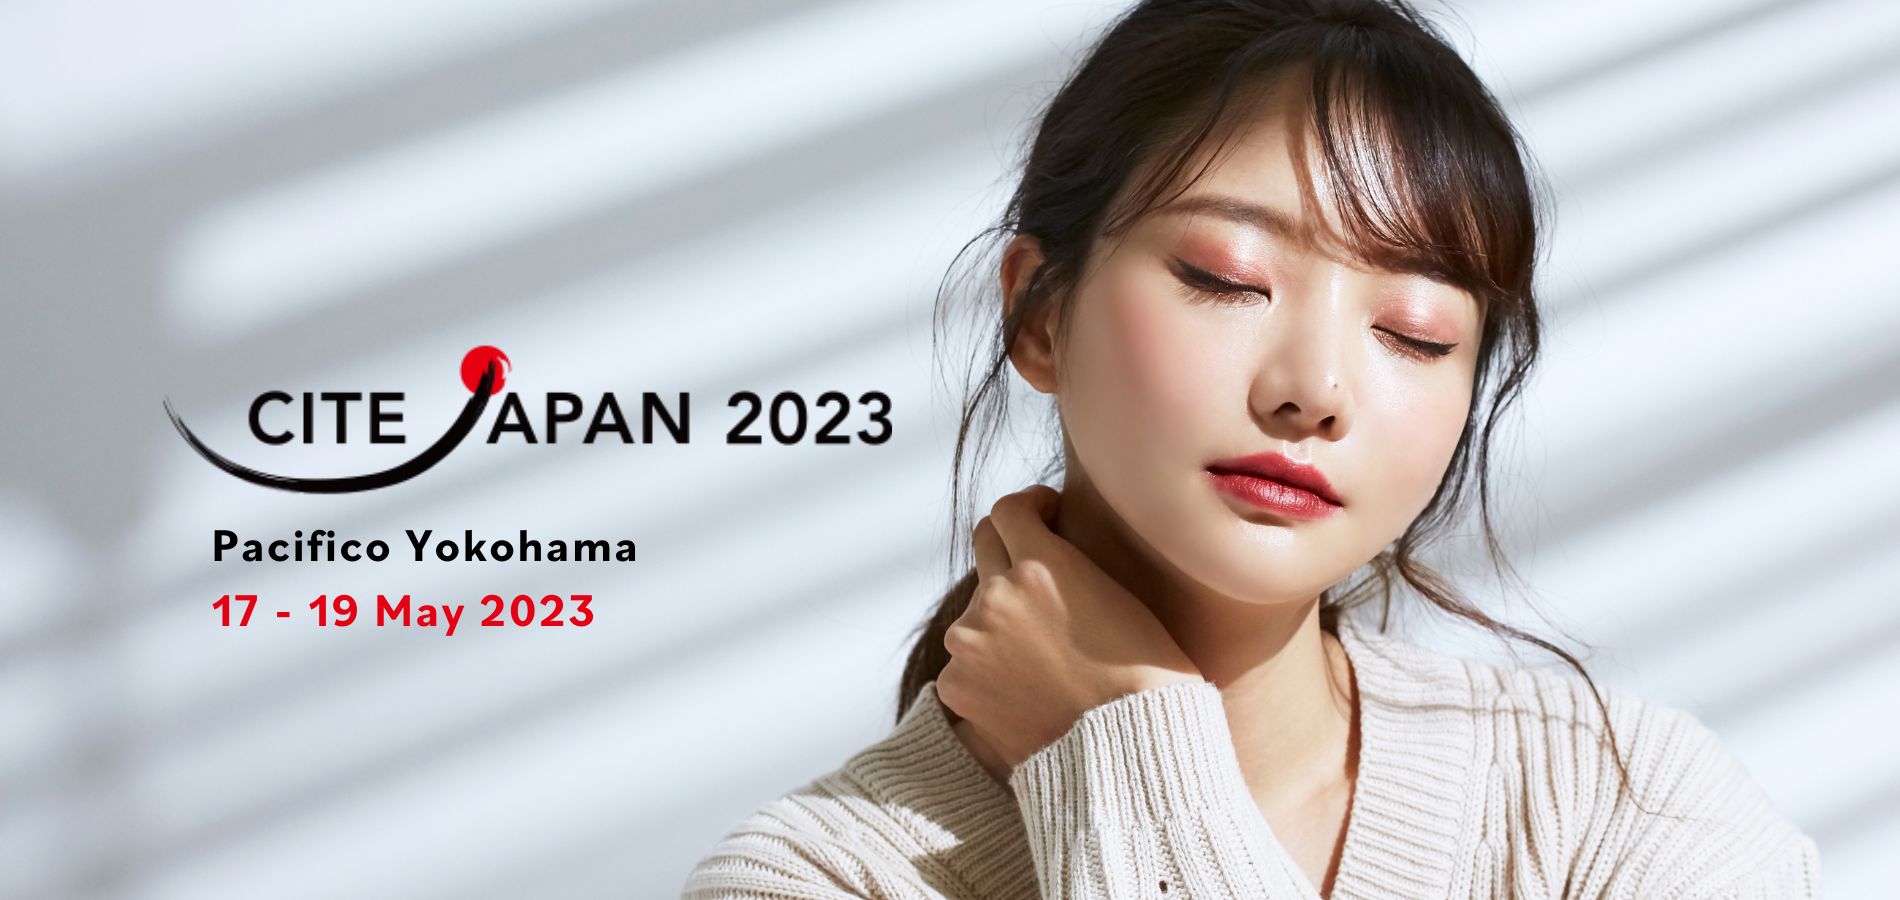 CITE Japan 2023 ウェブサイト 注目画像